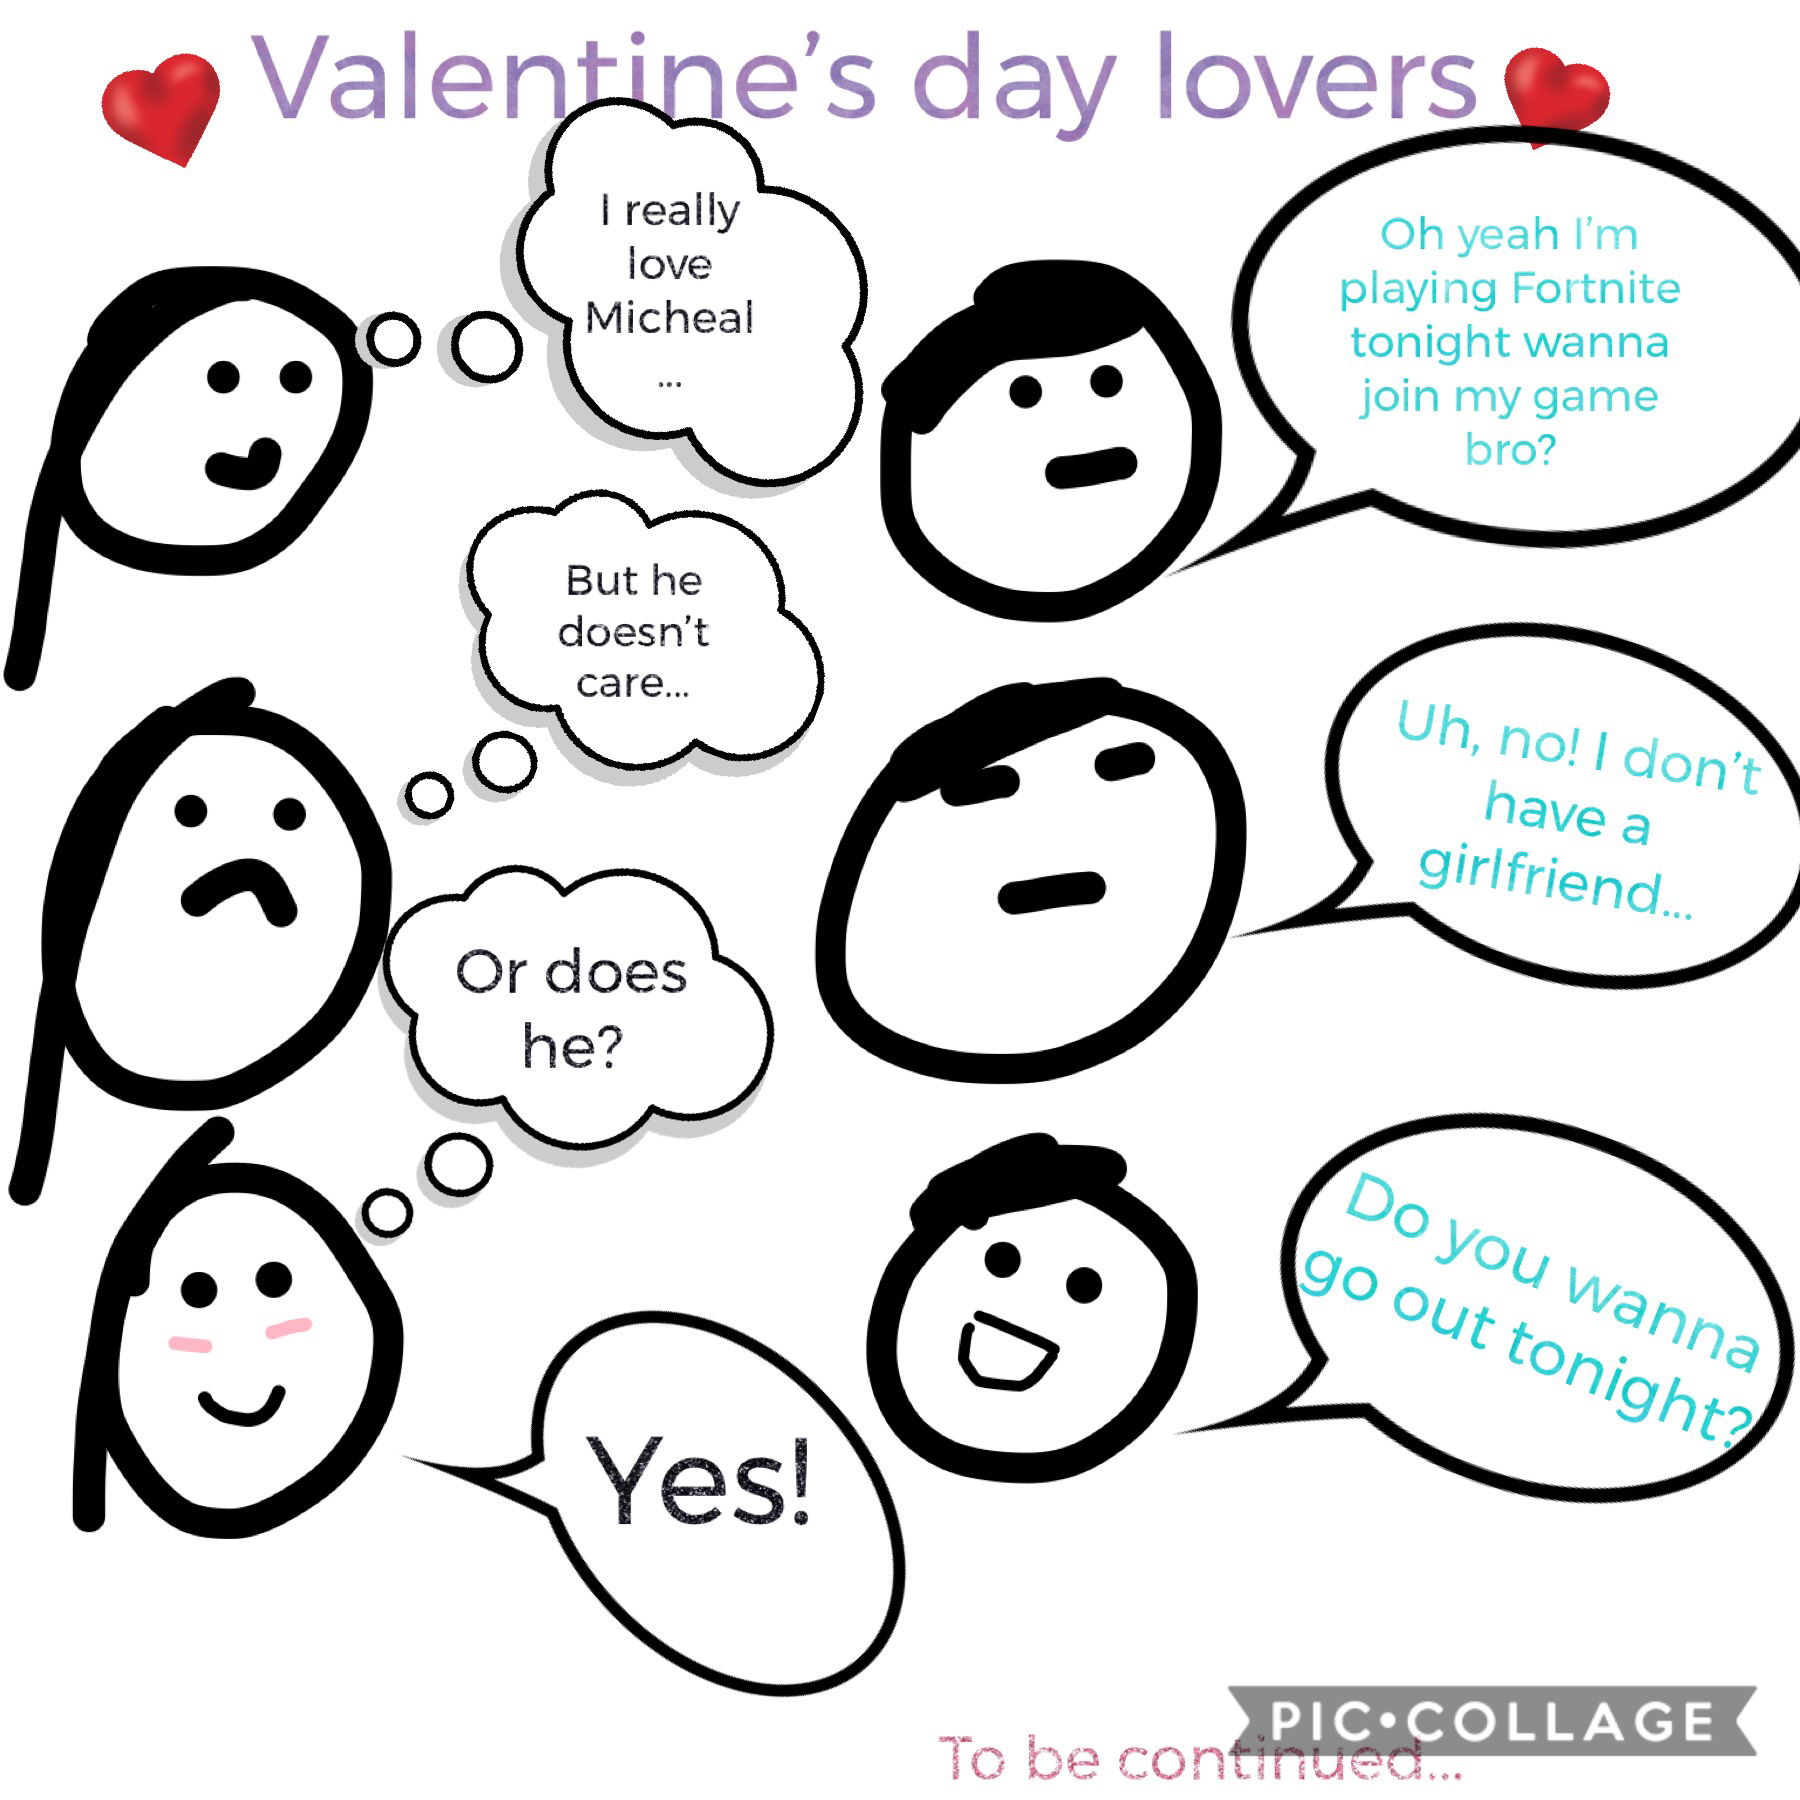 Valentine’s Day lovers